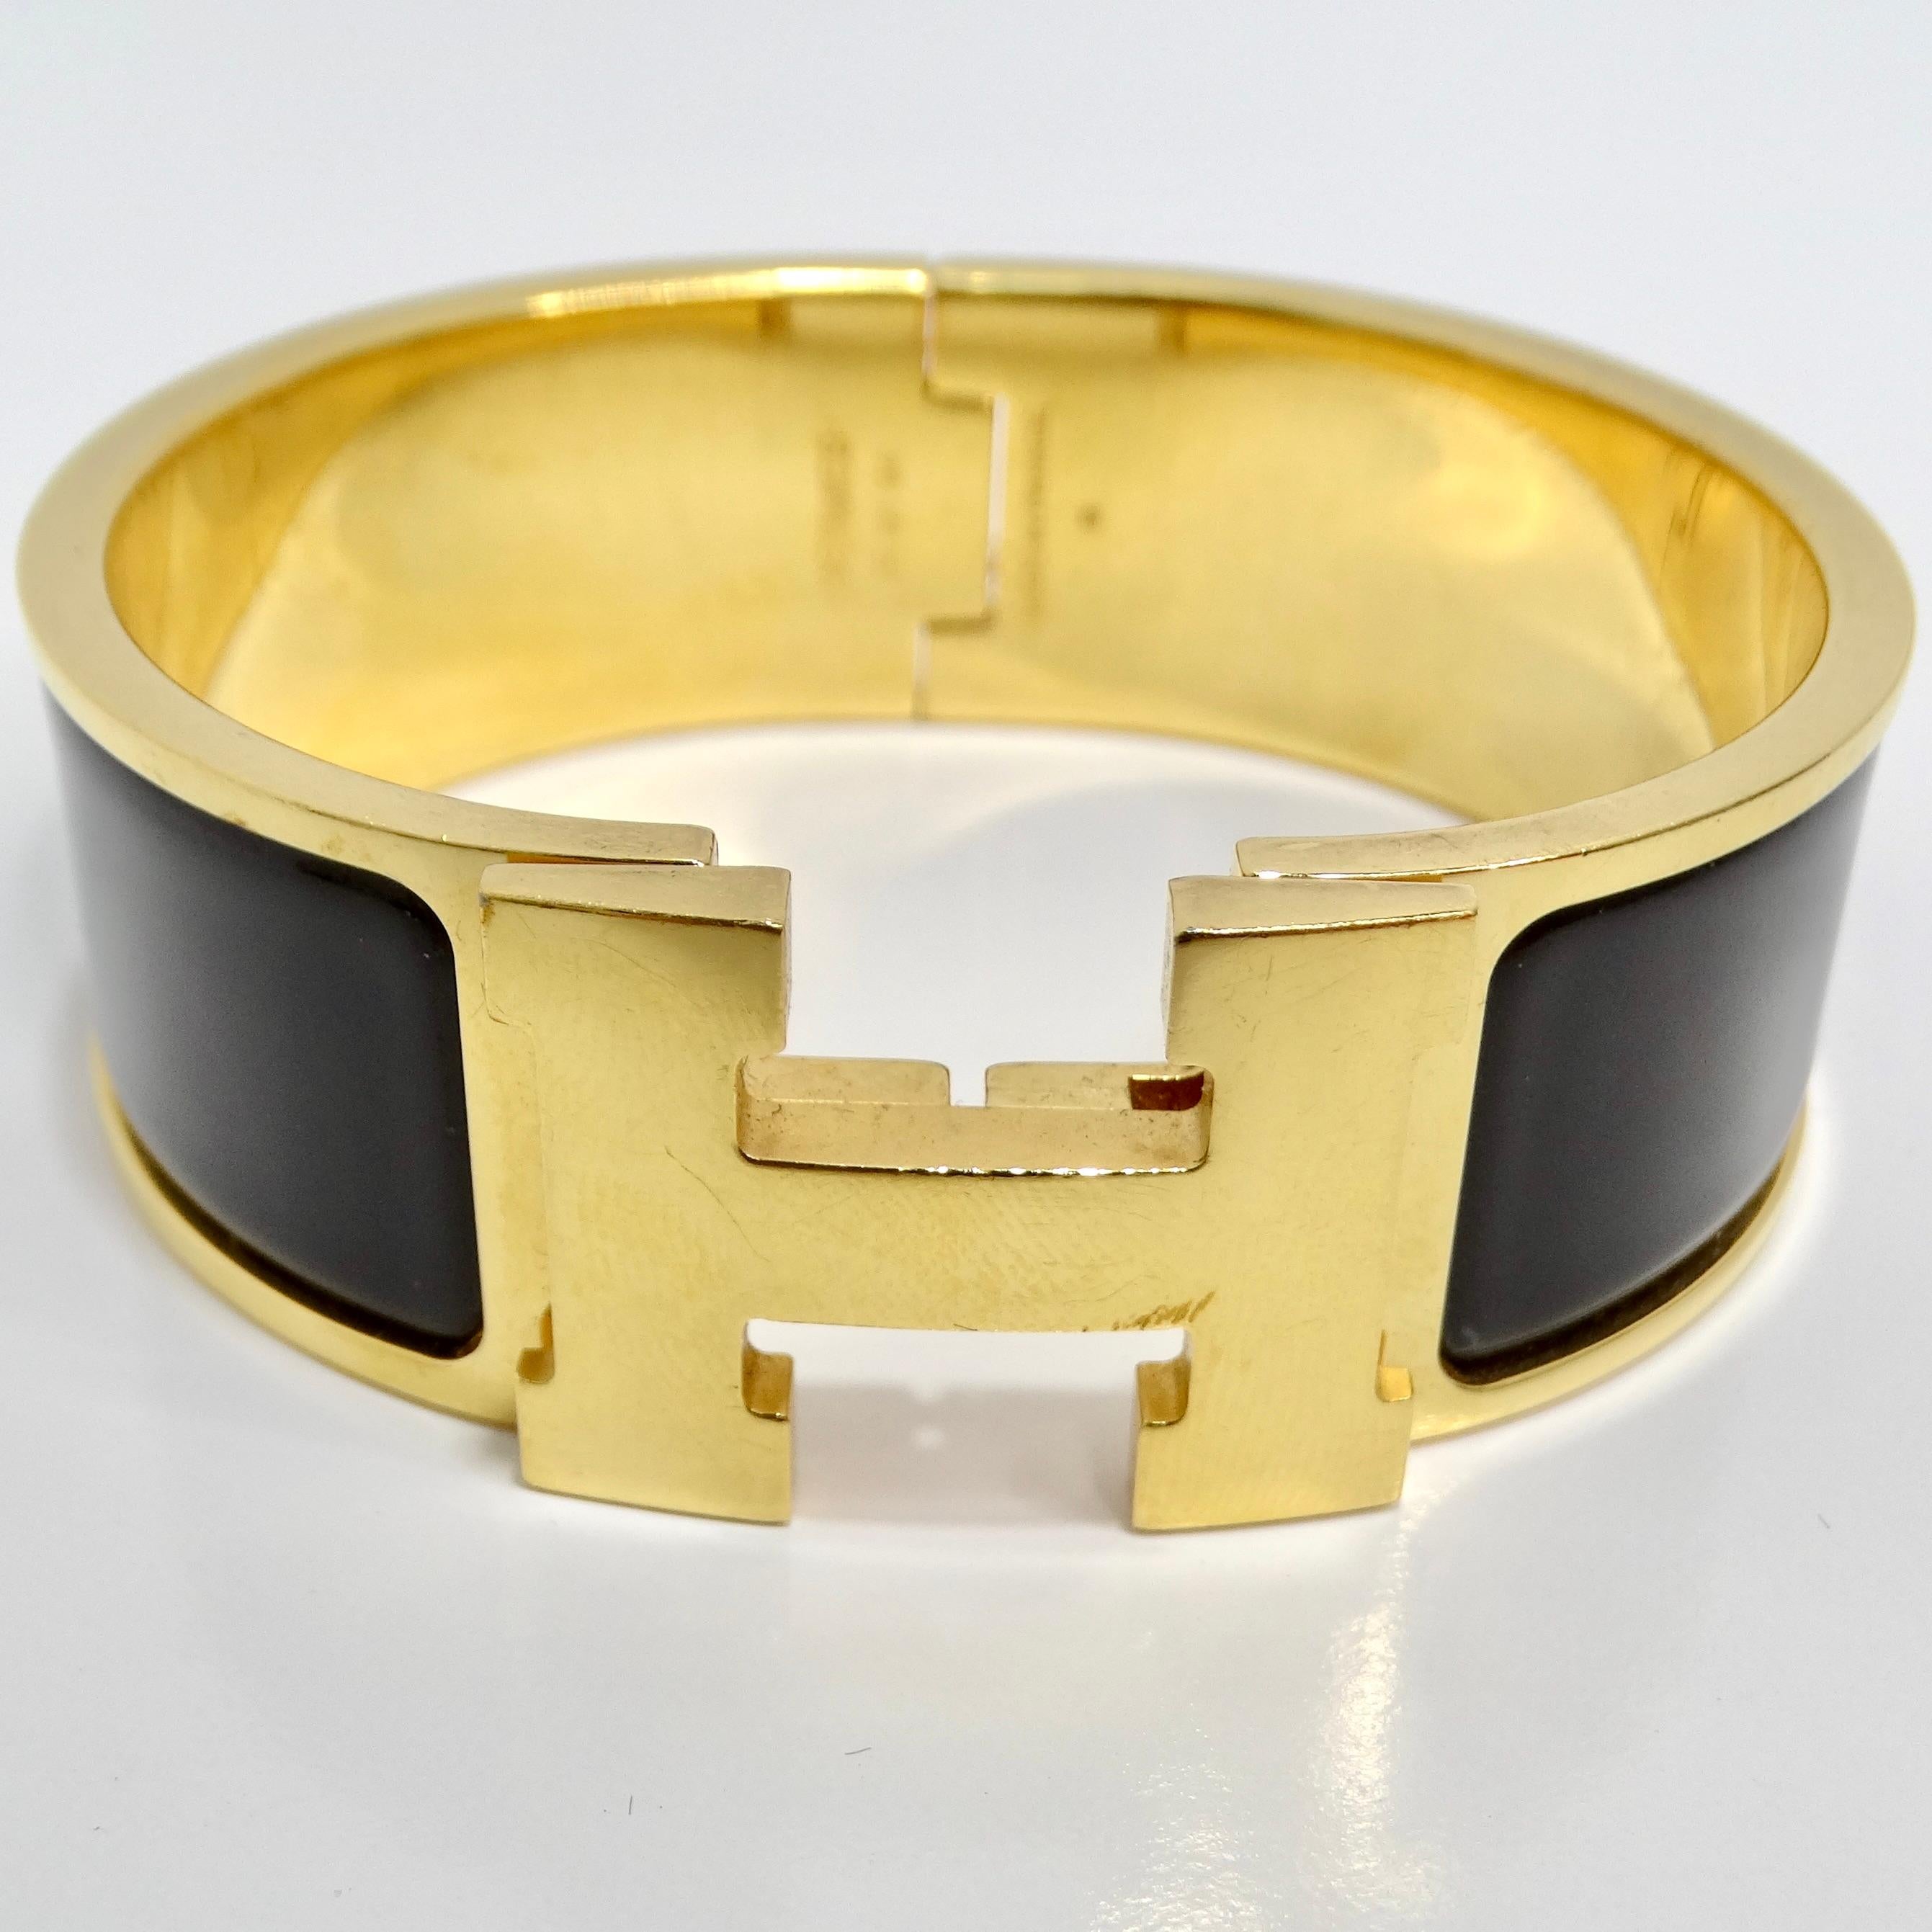 Gönnen Sie sich einen ikonischen Stil mit dem Hermes Clic Clac H Black Enamel Gold Plated Bracelet - ein vielseitiges und zeitloses Accessoire, das Ihrem Ensemble einen Hauch von Luxus verleiht. Dieses goldfarbene Armband hat ein Scharnier auf der